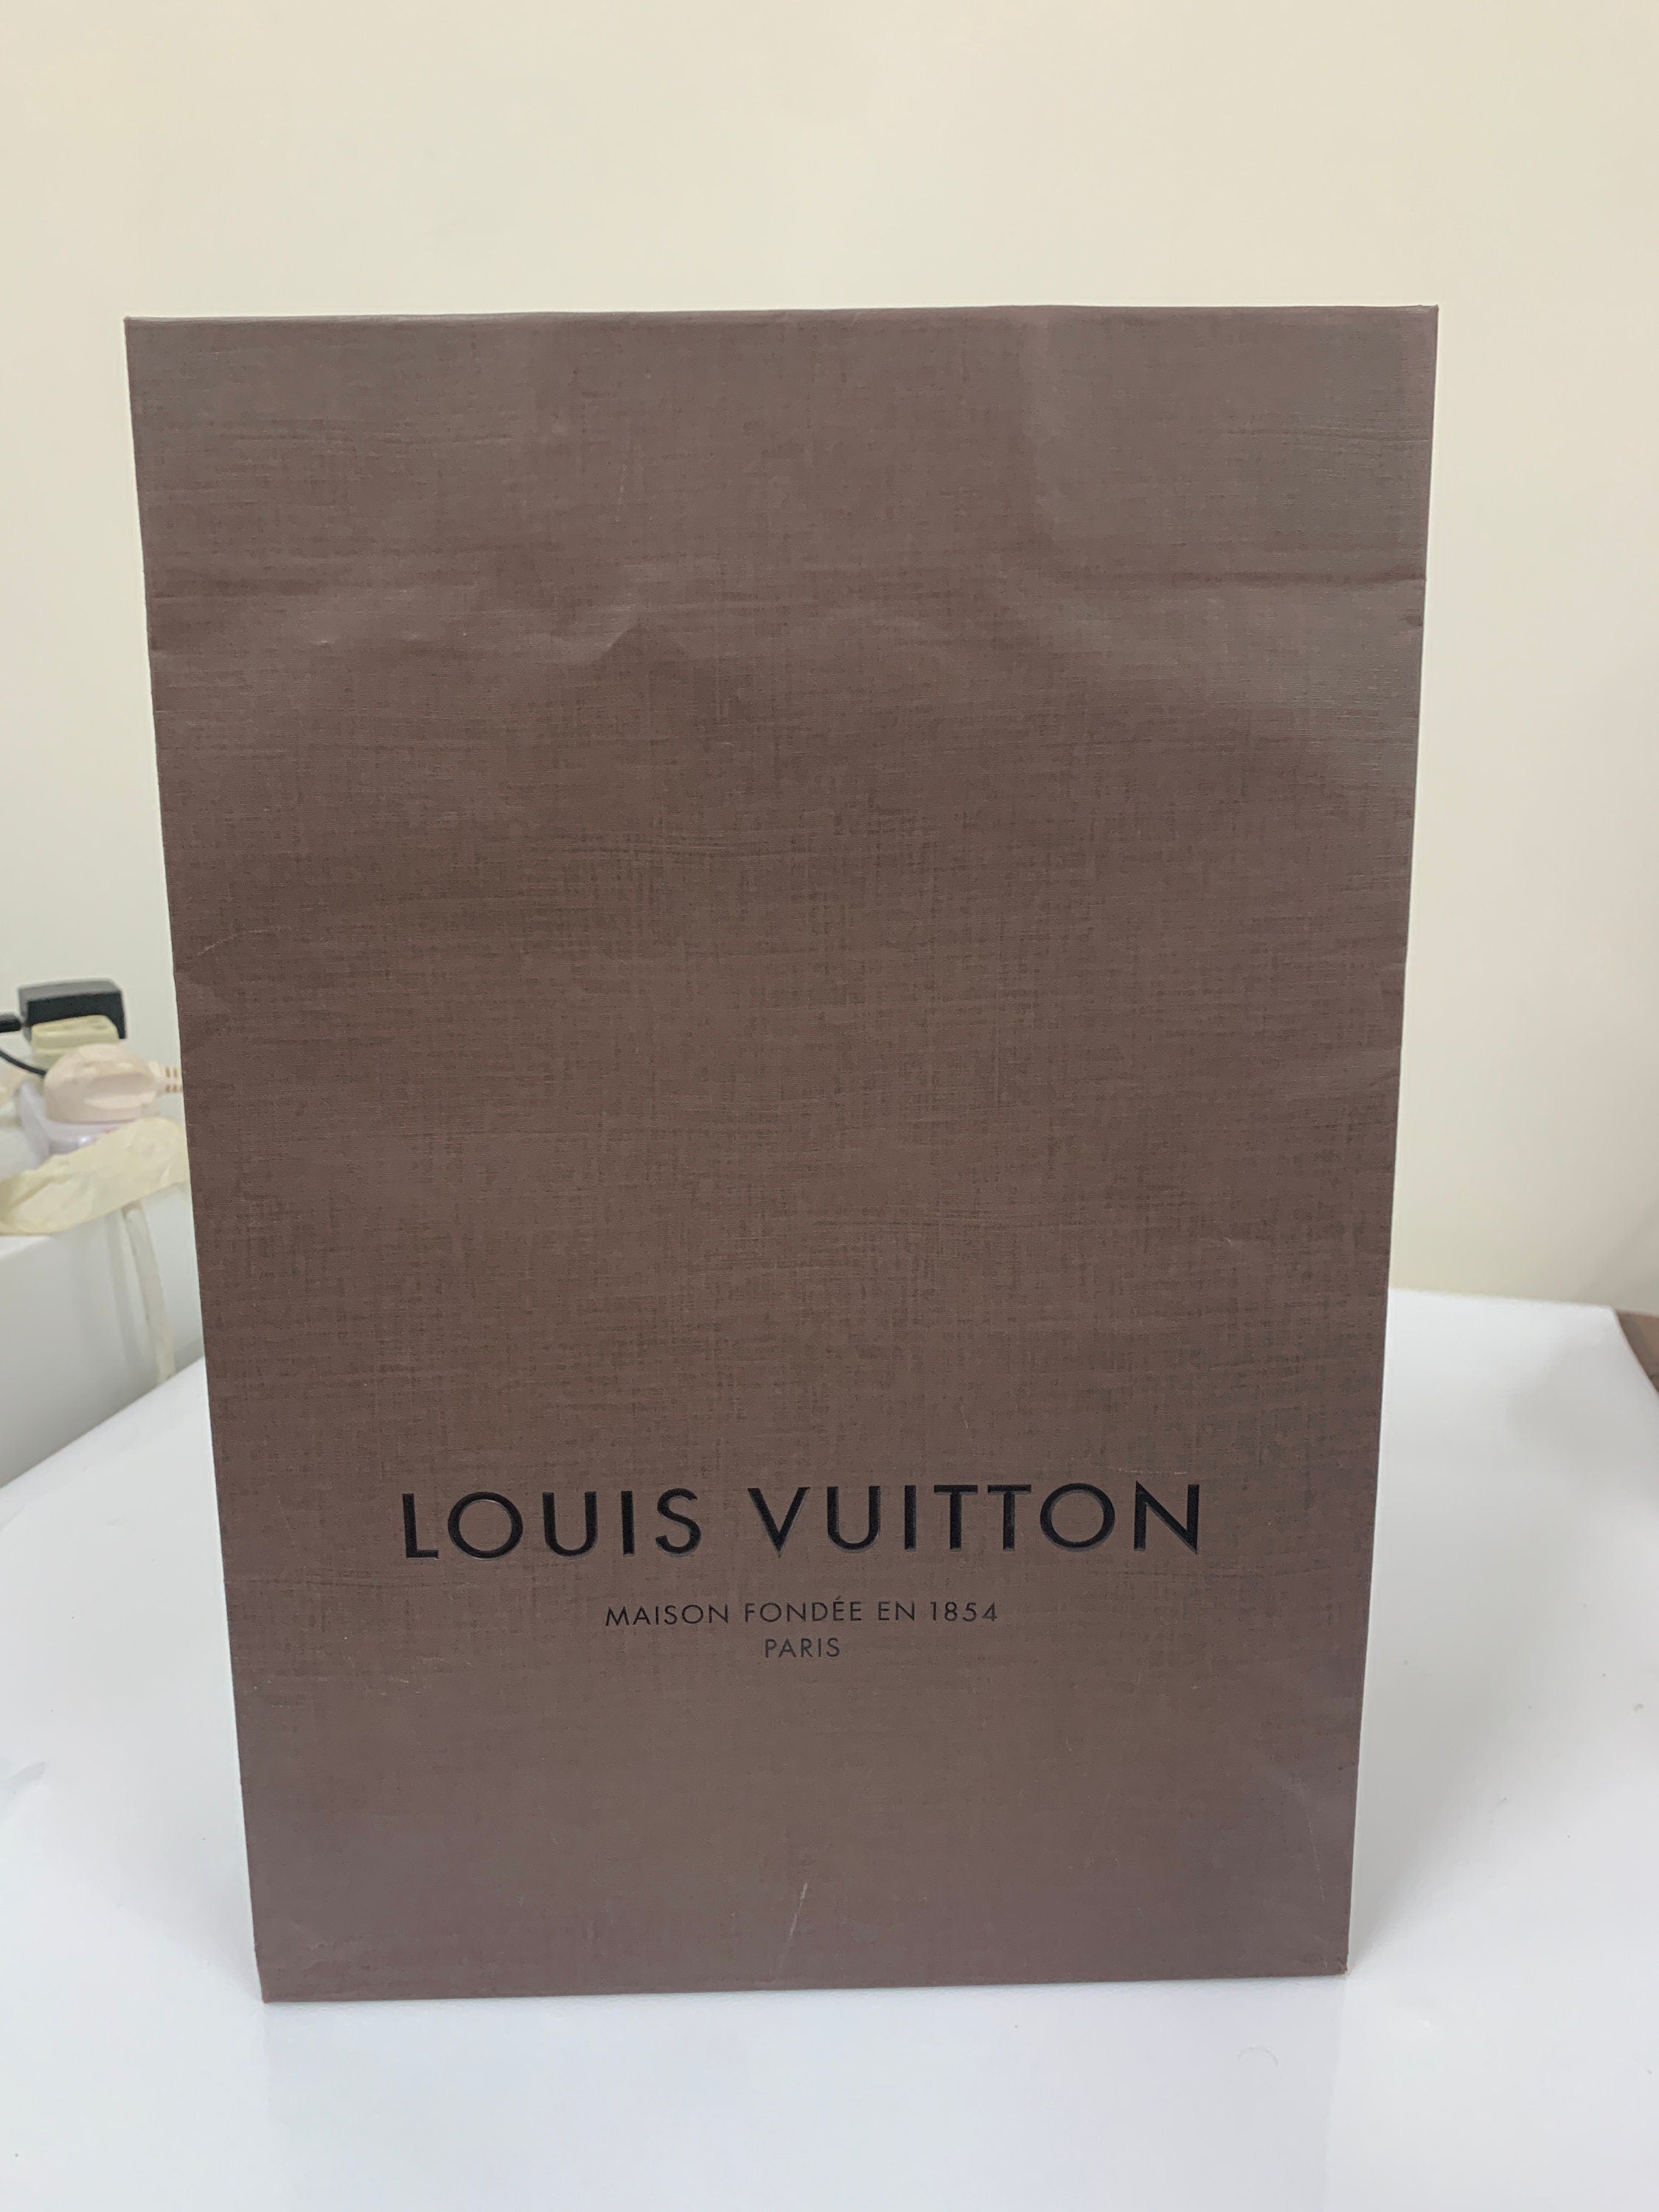 LOUIS VUITTON Authentic Vintage Paper Gift Bag